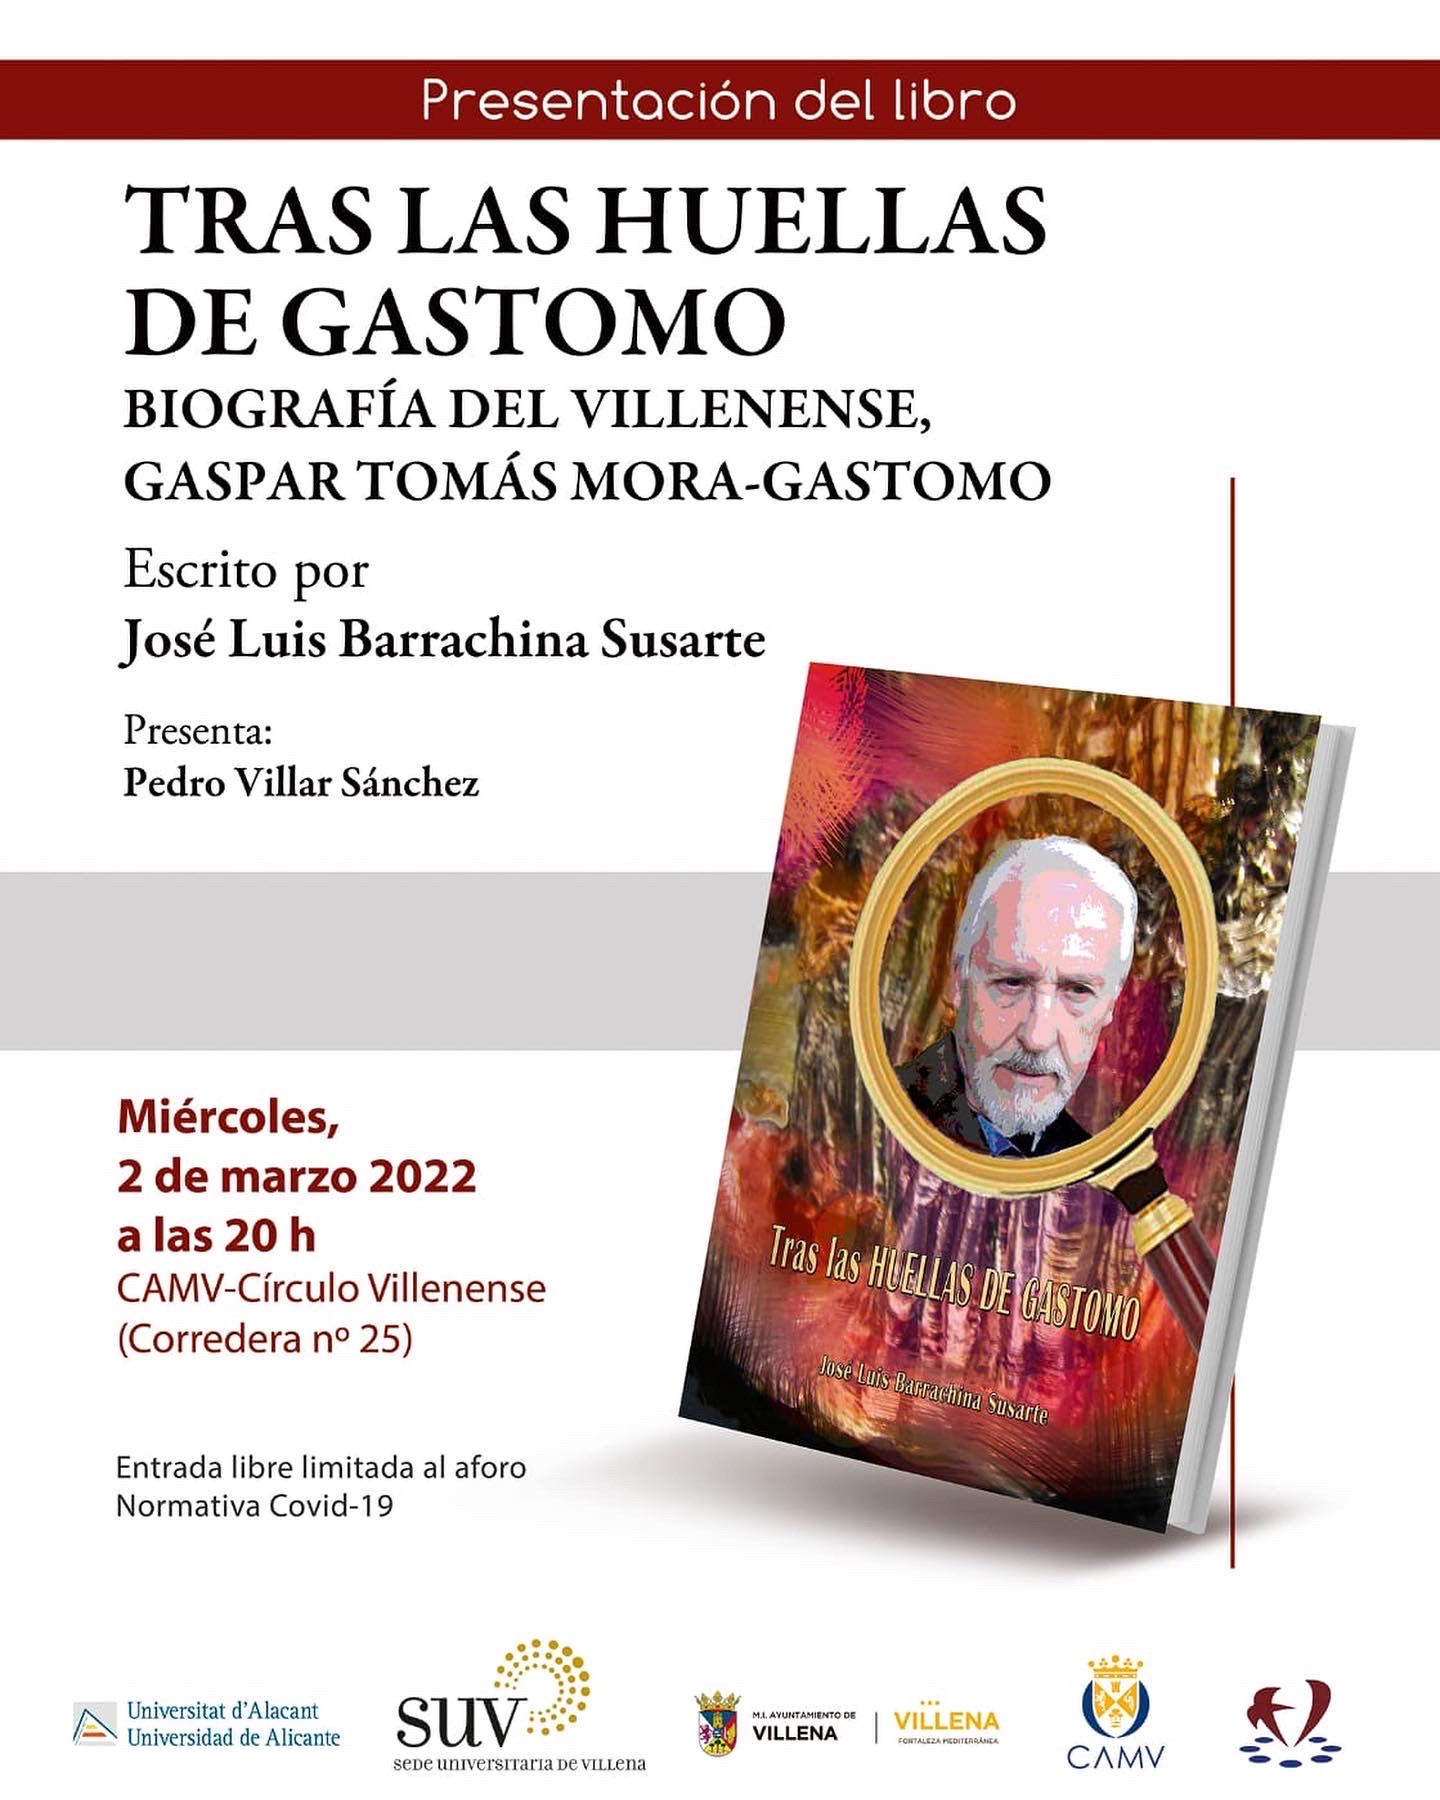 Presentación del libro de José Luis Barrachina “Tras las huellas de Gastomo”